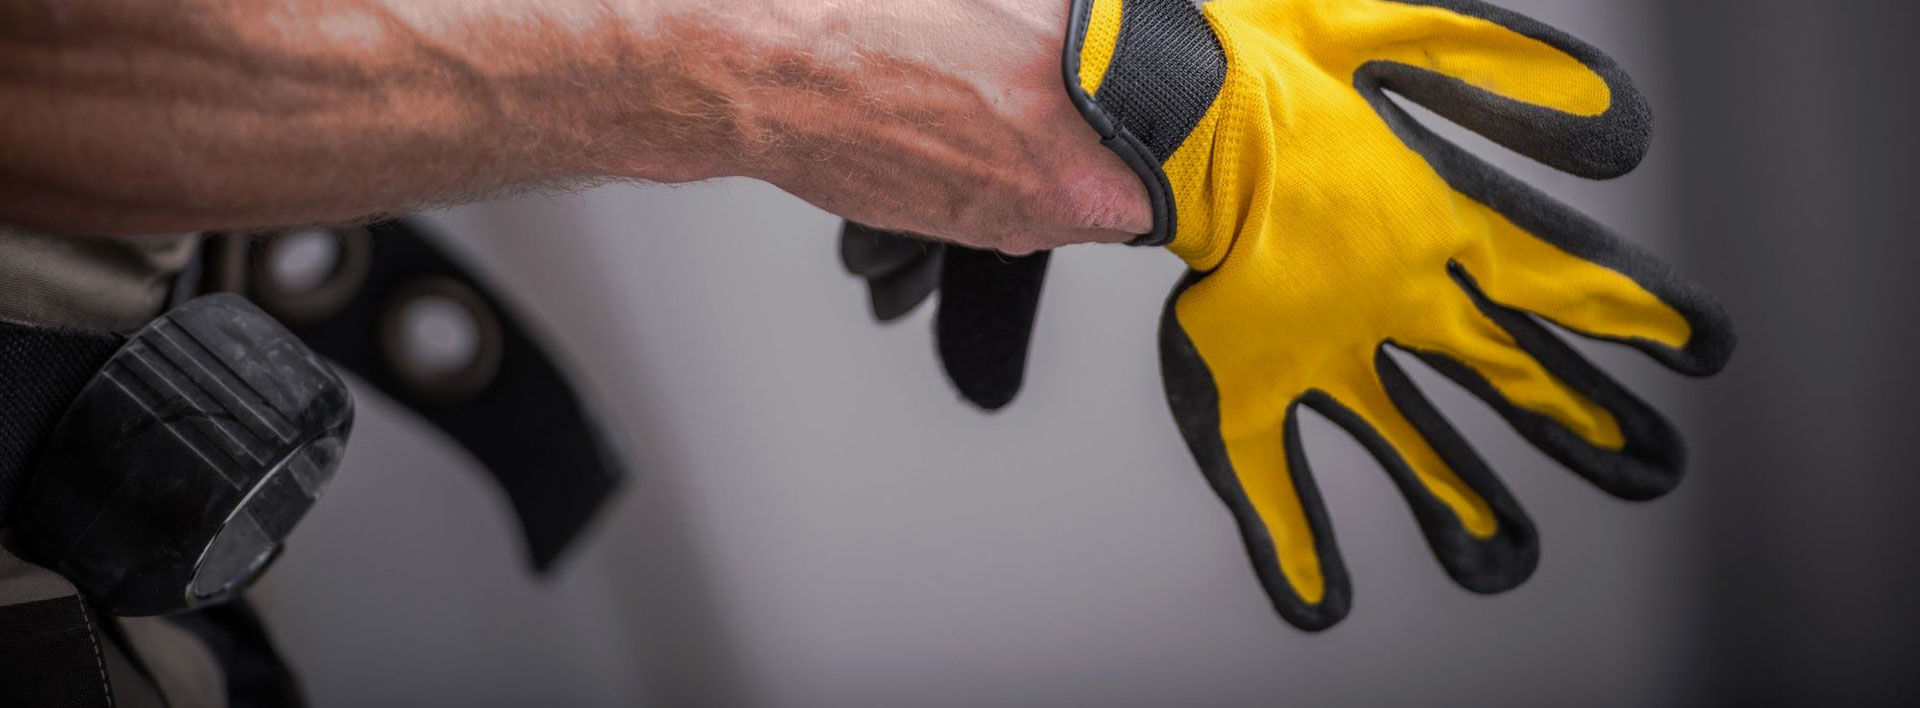 Standardna preskusna metoda ISO 23388 za zaščitne rokavice proti mehanskim tveganjem